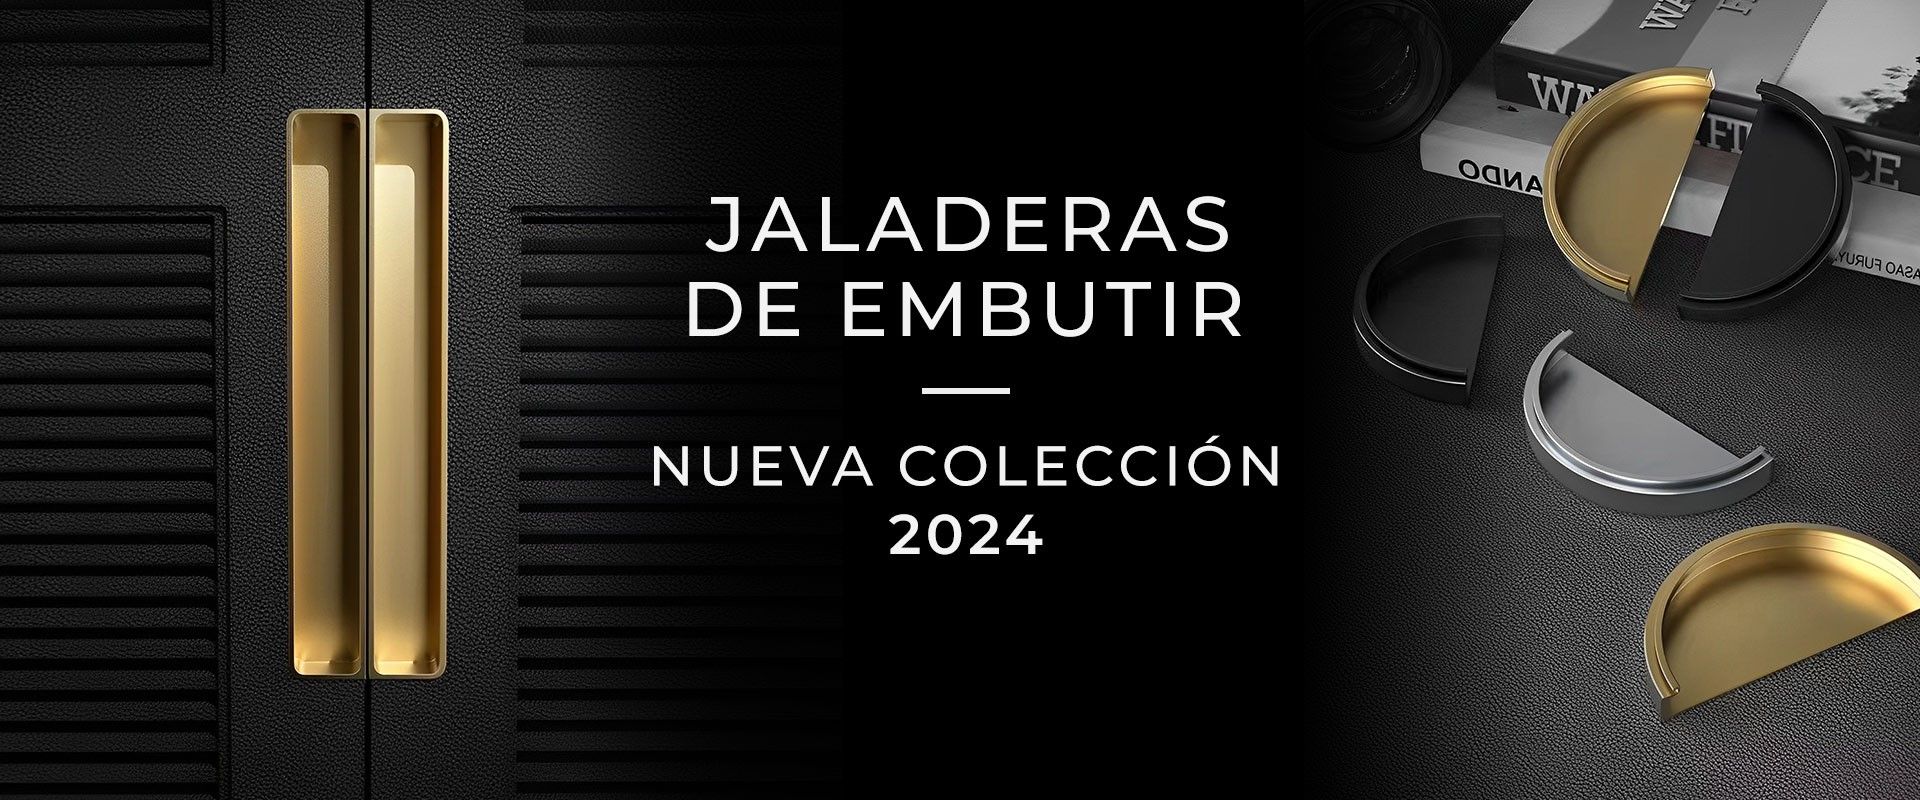 Jaladeras de embutir | Nueva Colección 2023 | Jako Herrajes